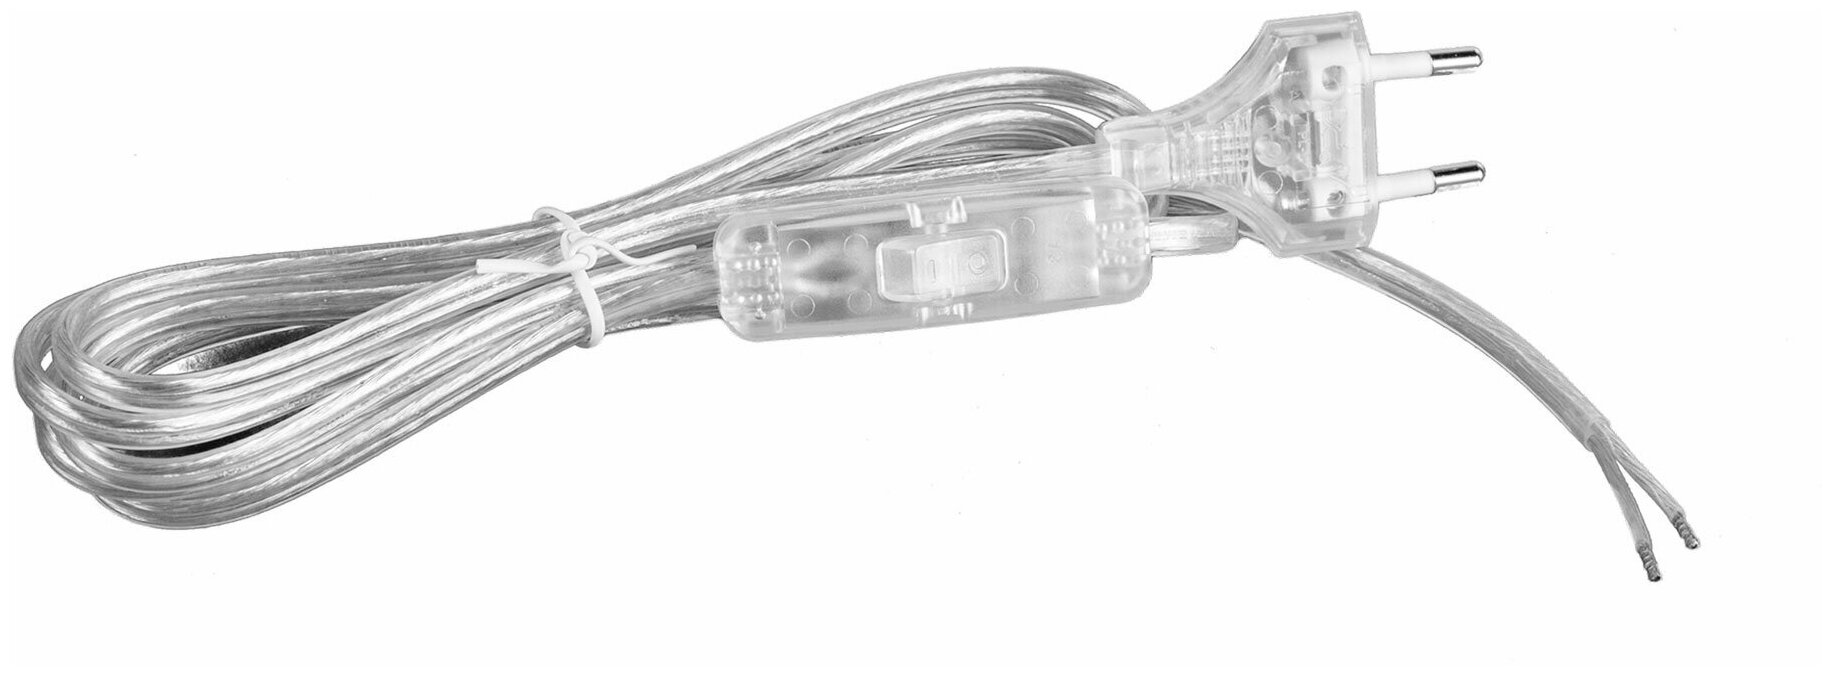 Шнур сетевой с выключателем и вилкой Citilux 6001 прозрачный